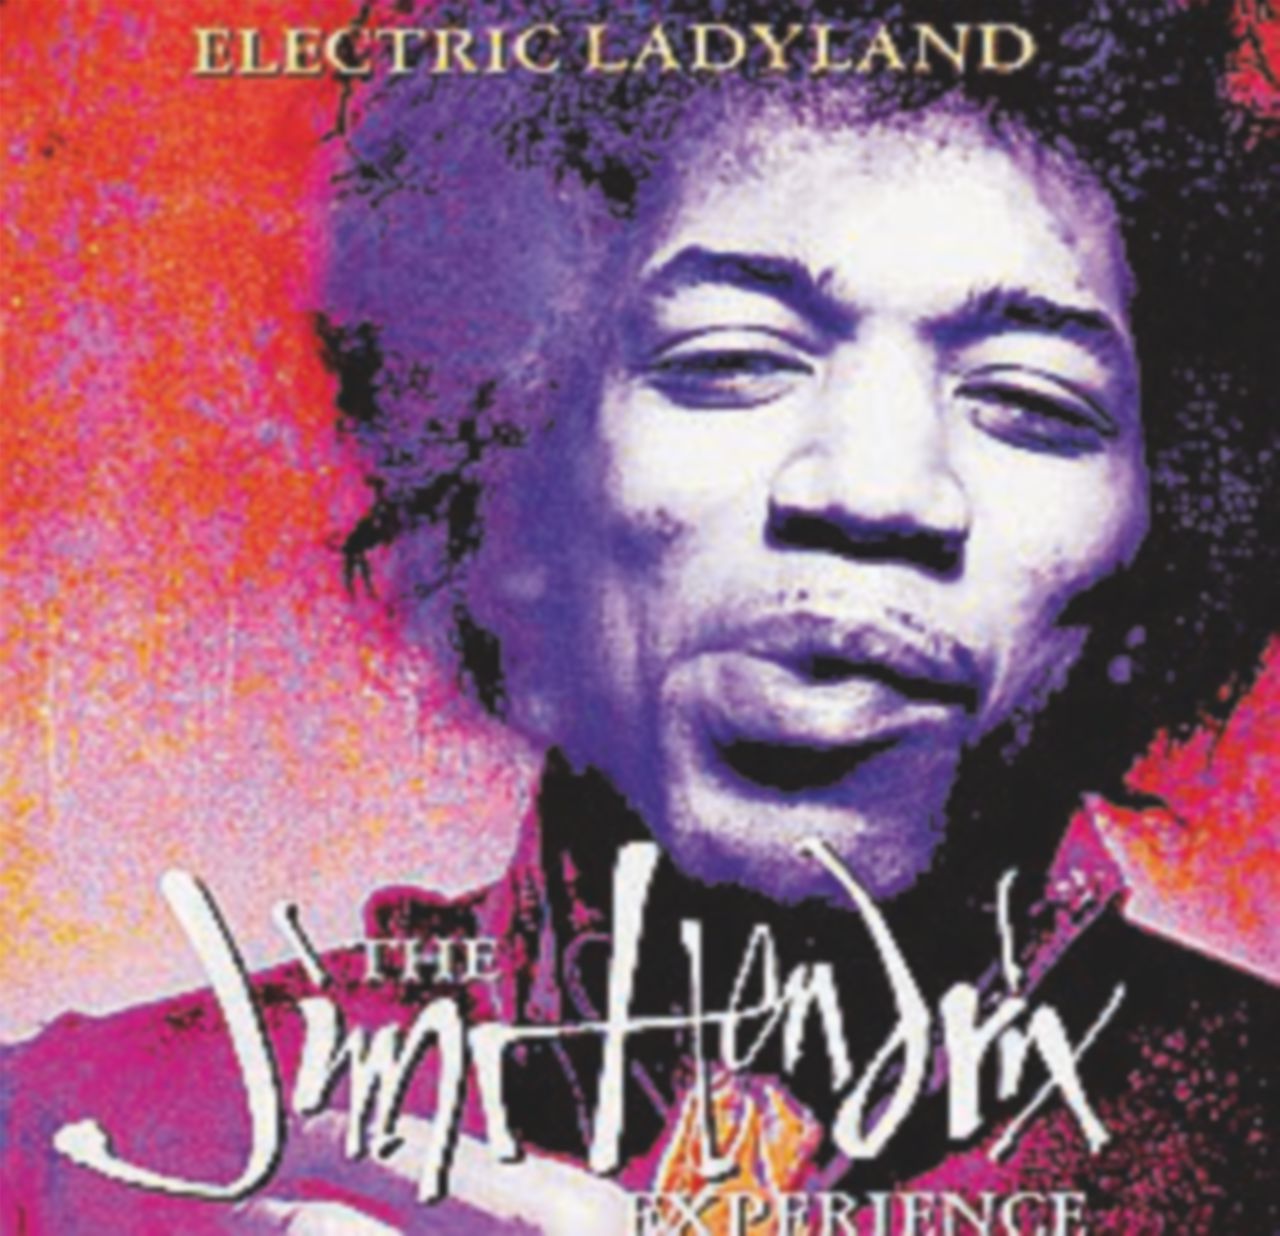 Copertina di “Eletric Ladyland”, la magia definitiva di Jimi Hendrix